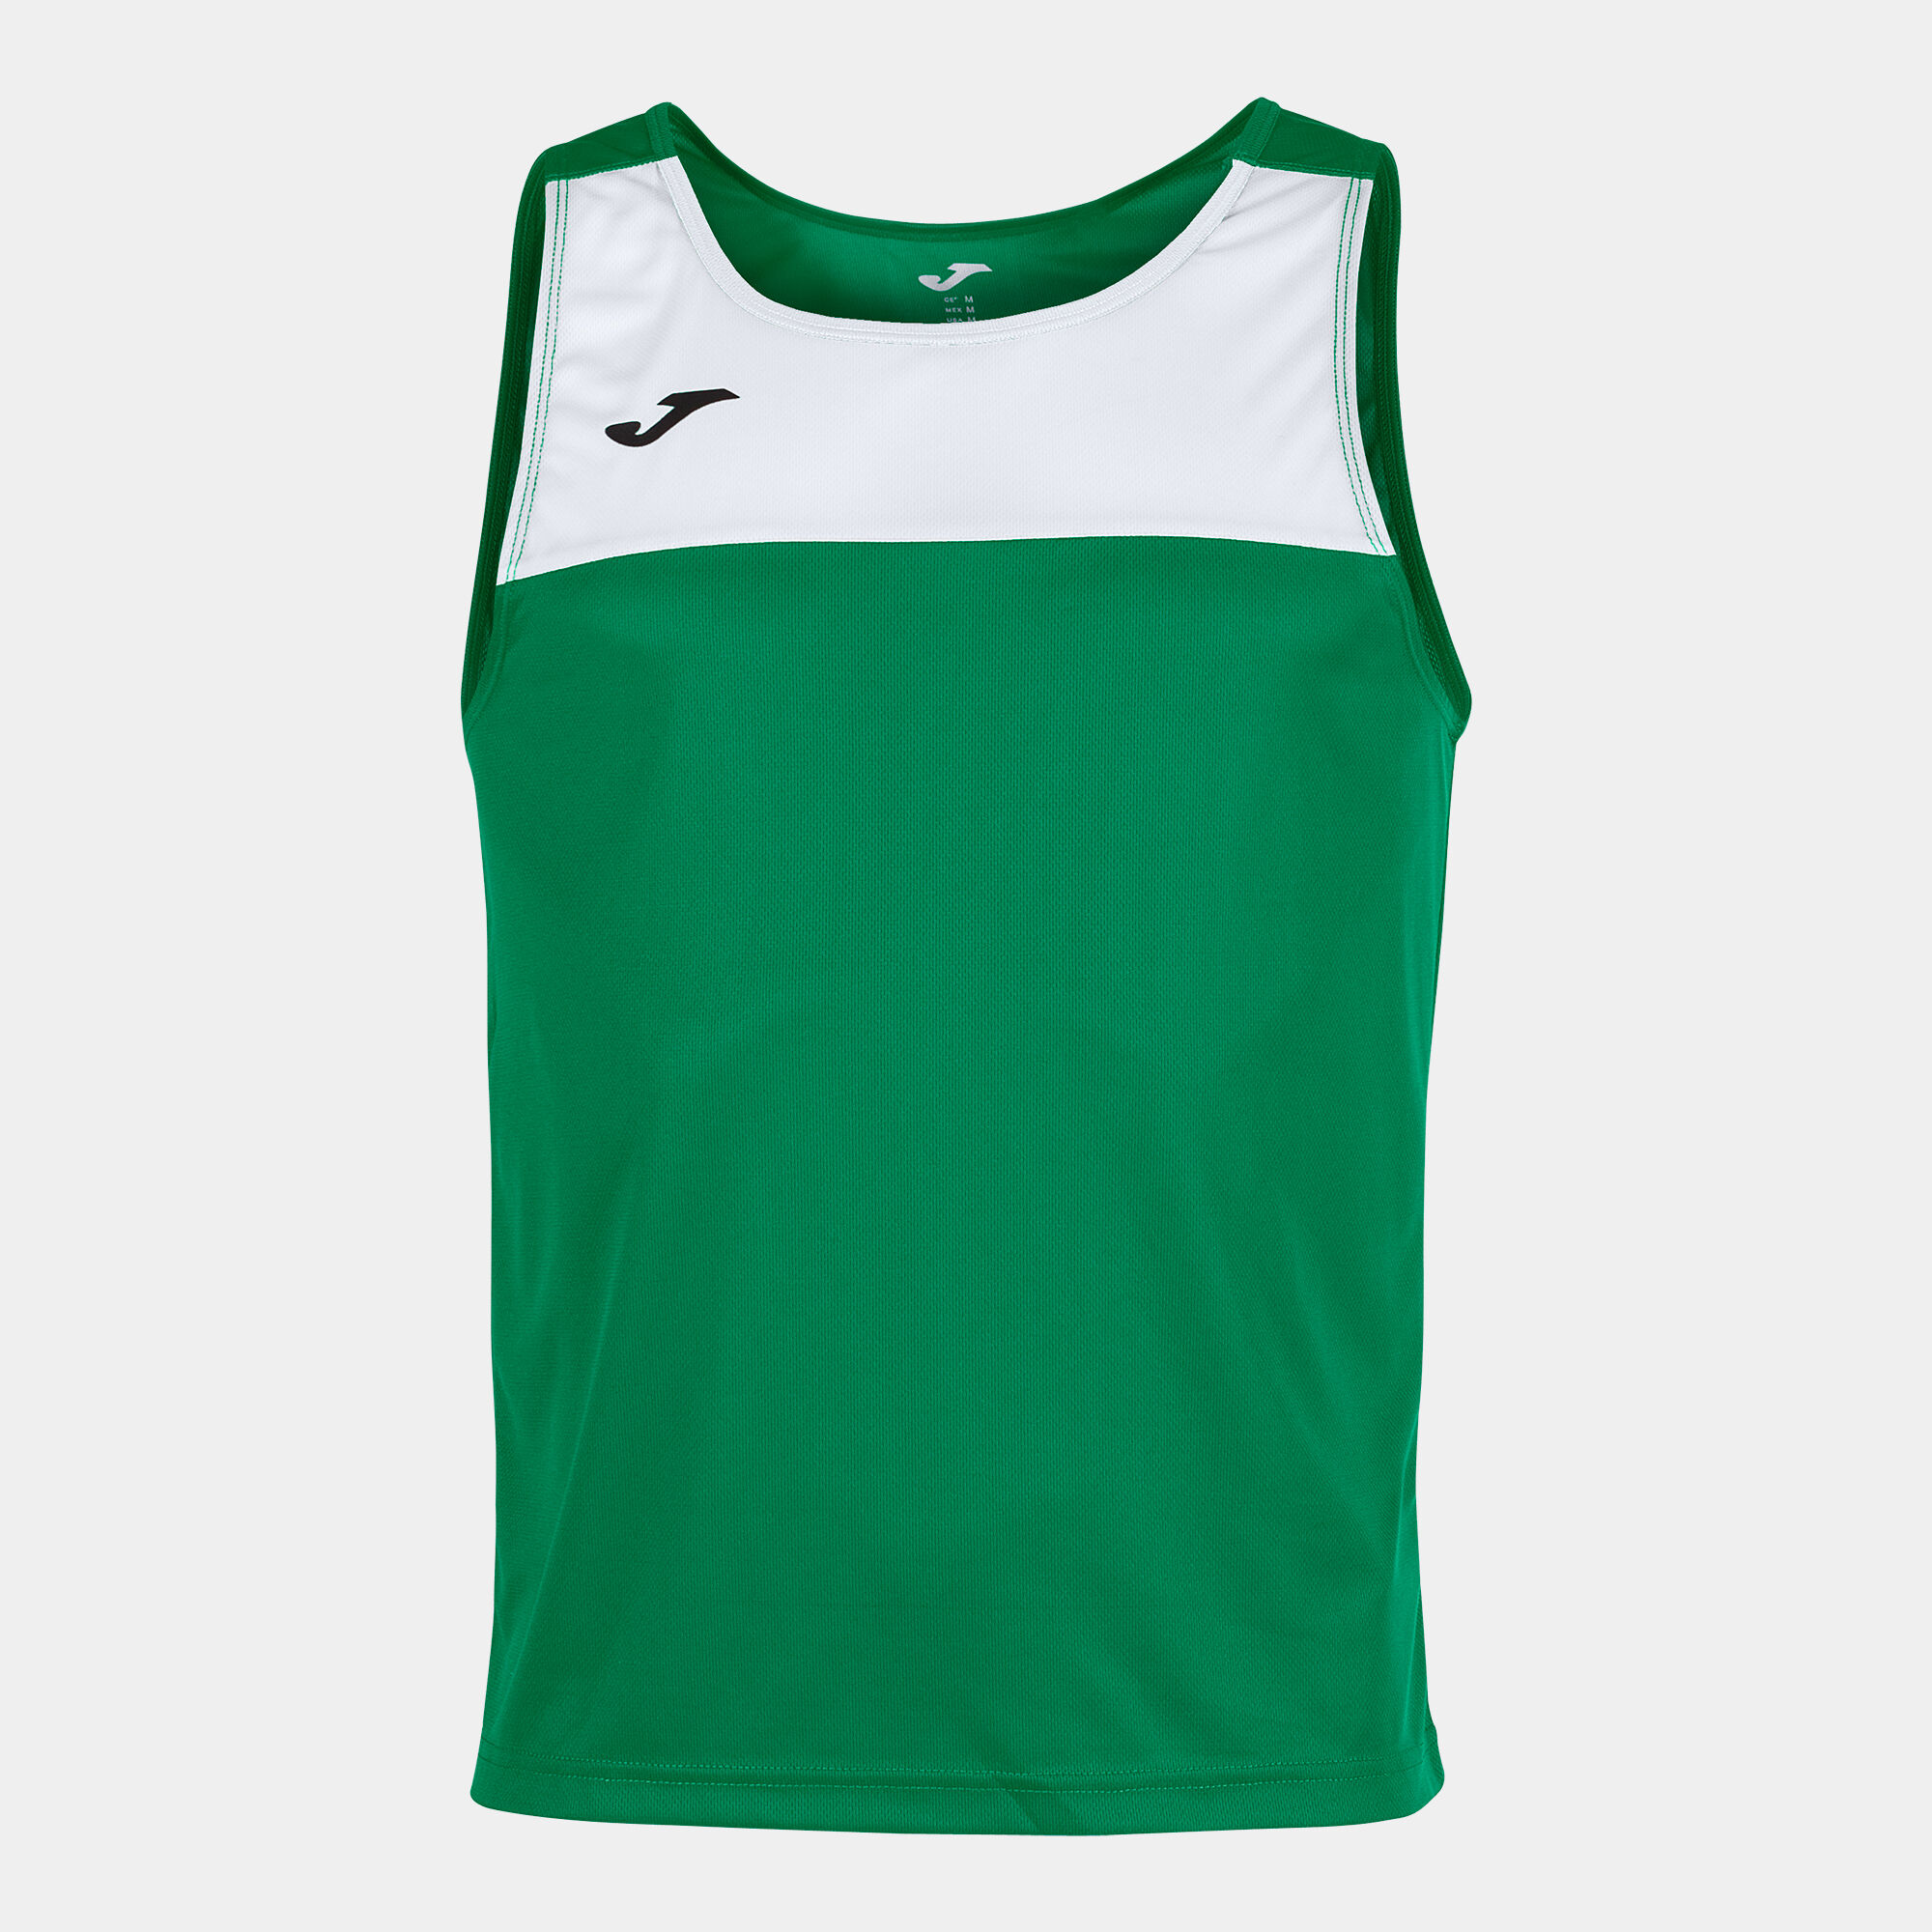 Koszulka bez rękawów mężczyźni Race zielony bialy